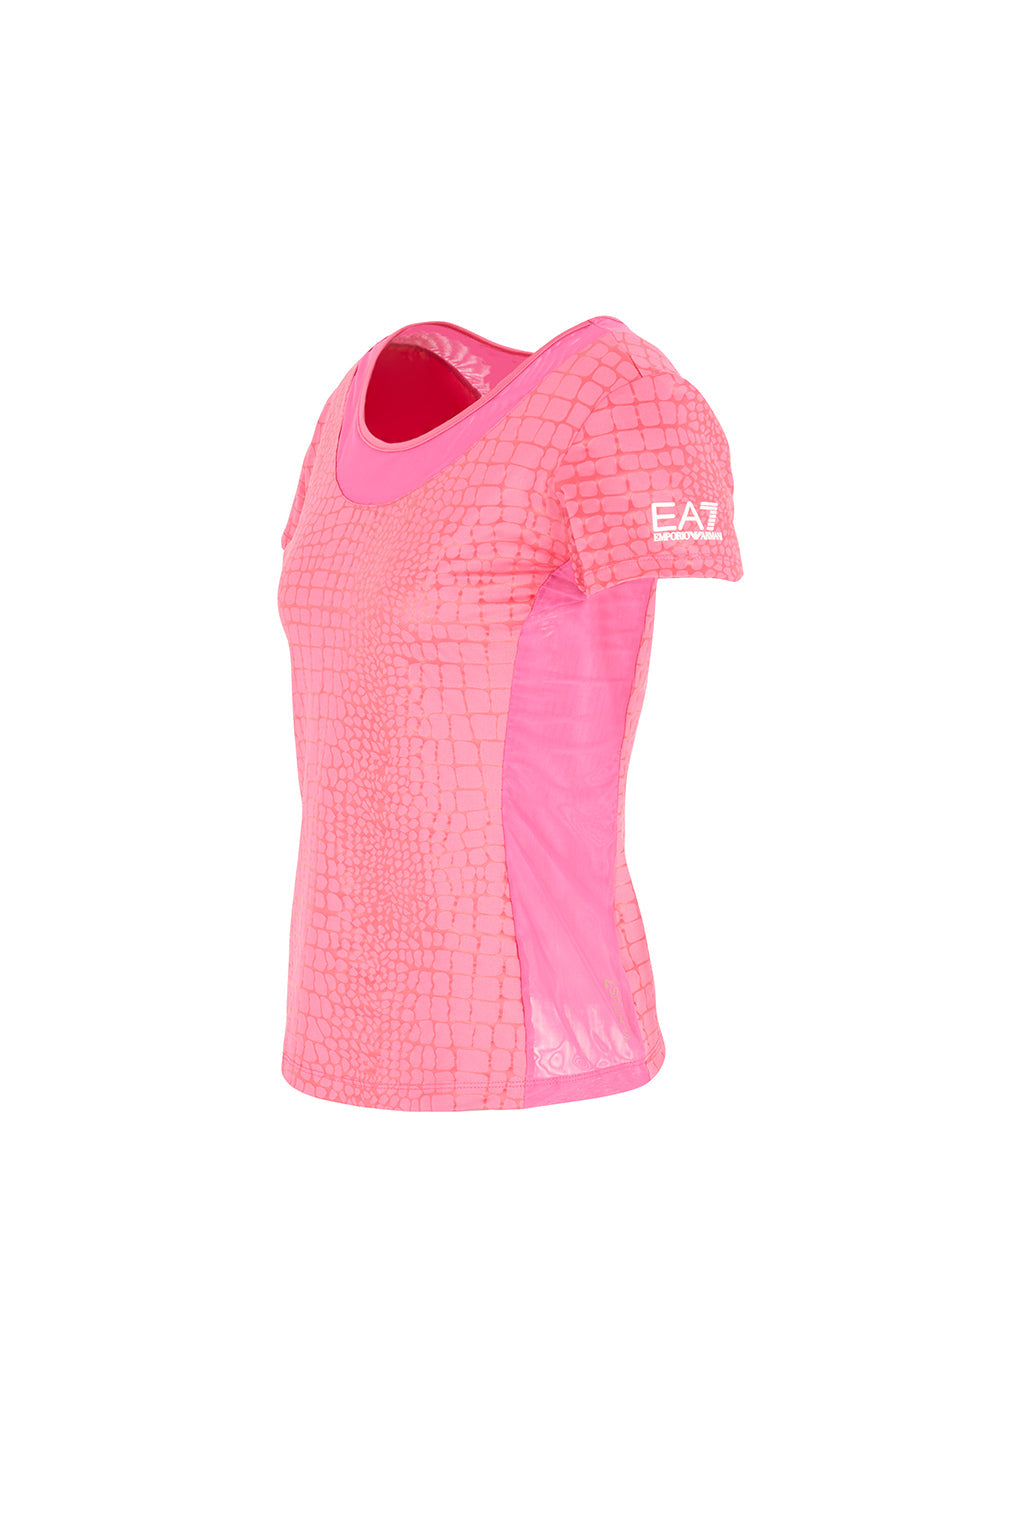 Womens Tennis Short Sleeve T-Shirt